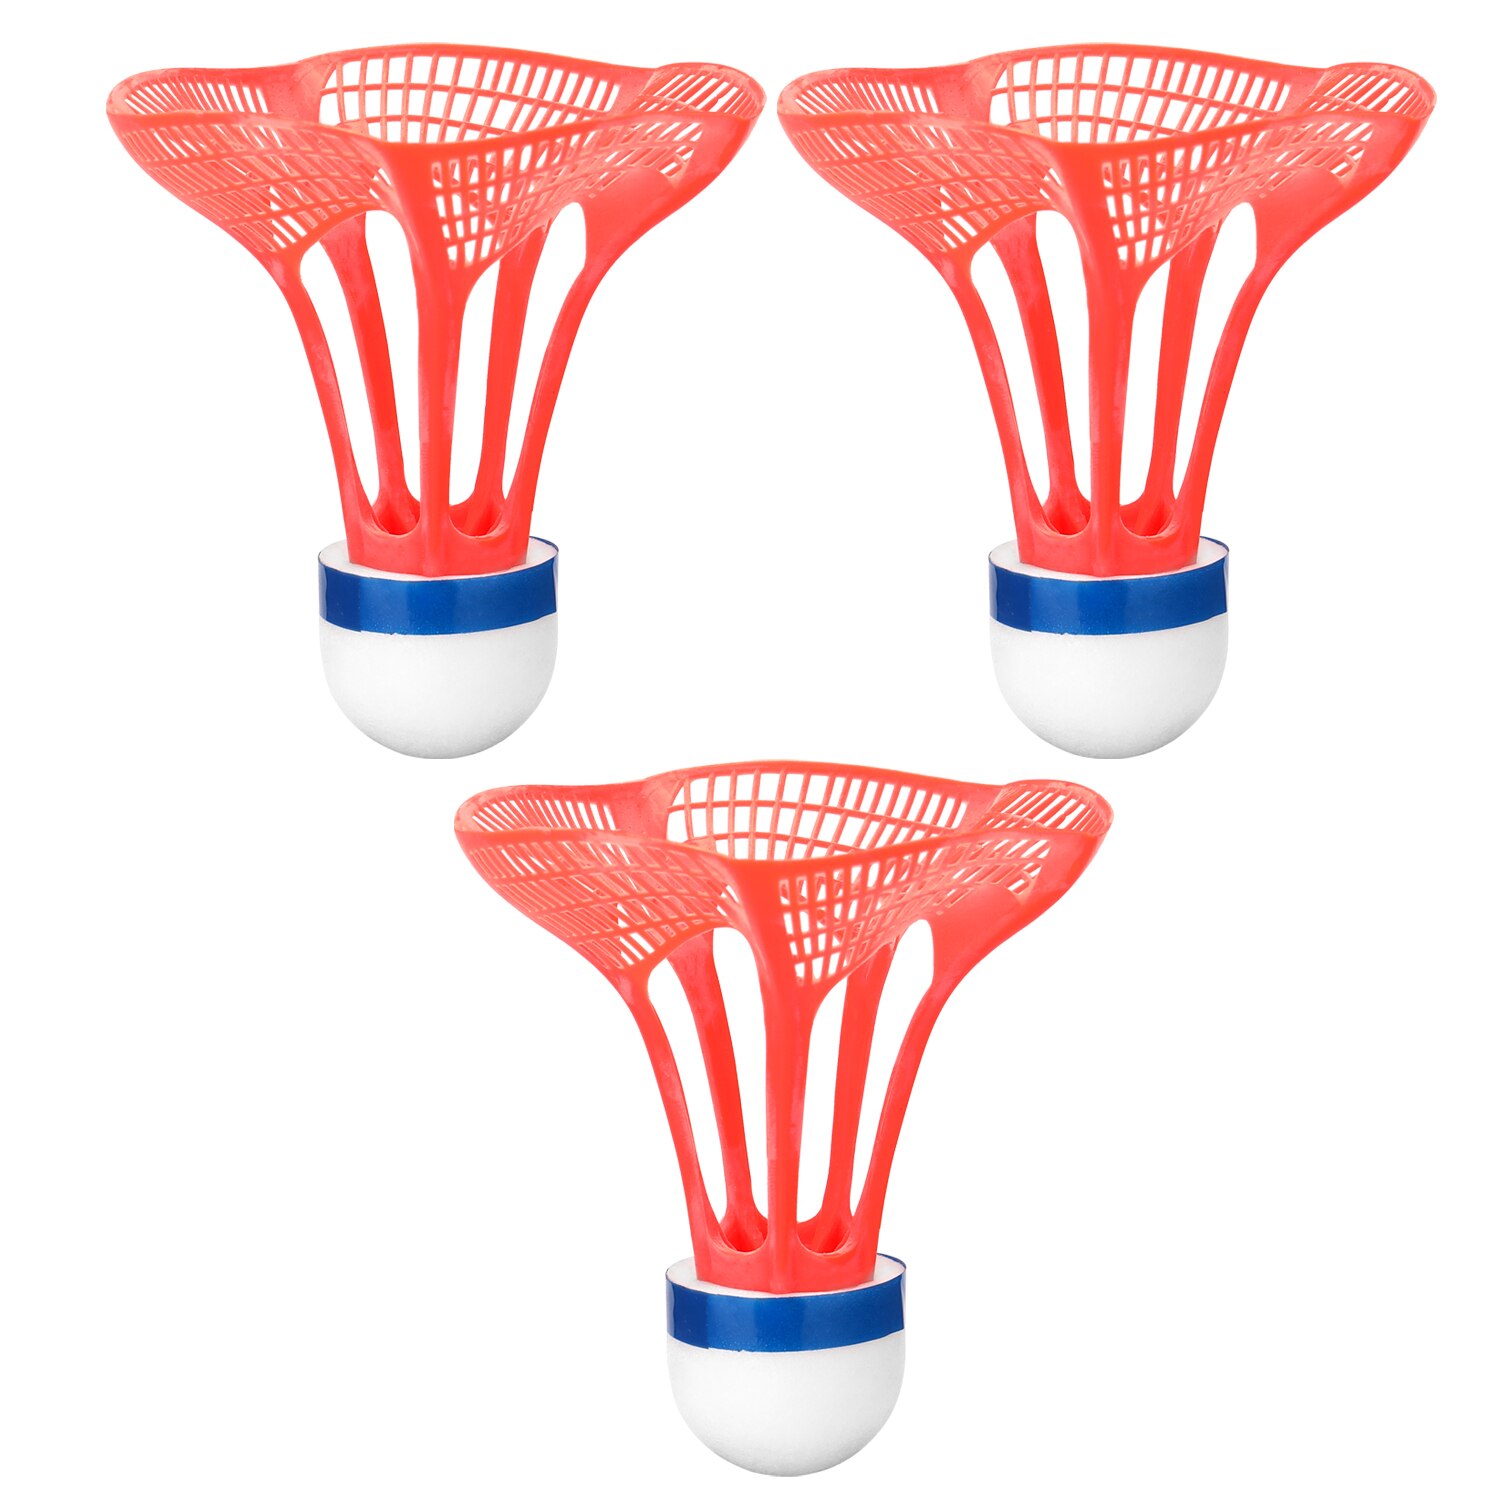 3 stk. udendørs badmintonbold plast airshuttle nylonbold sportstræning træning fjederbuefugle modstand mod vind: Rød